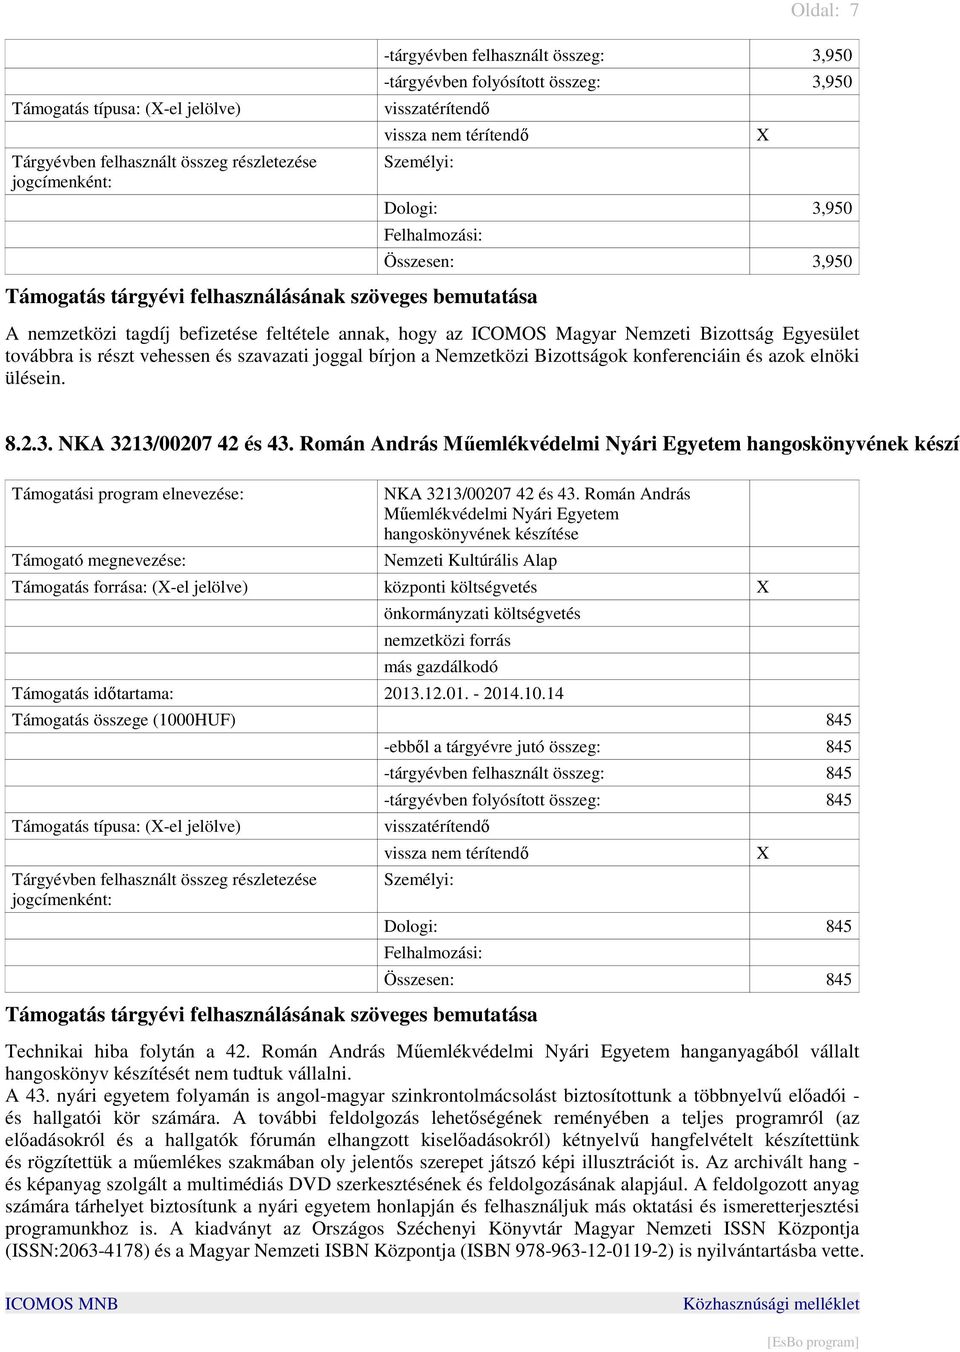 Román András Mőemlékvédelmi Nyári Egyetem hangoskönyvének készít NKA 3213/00207 42 és 43.